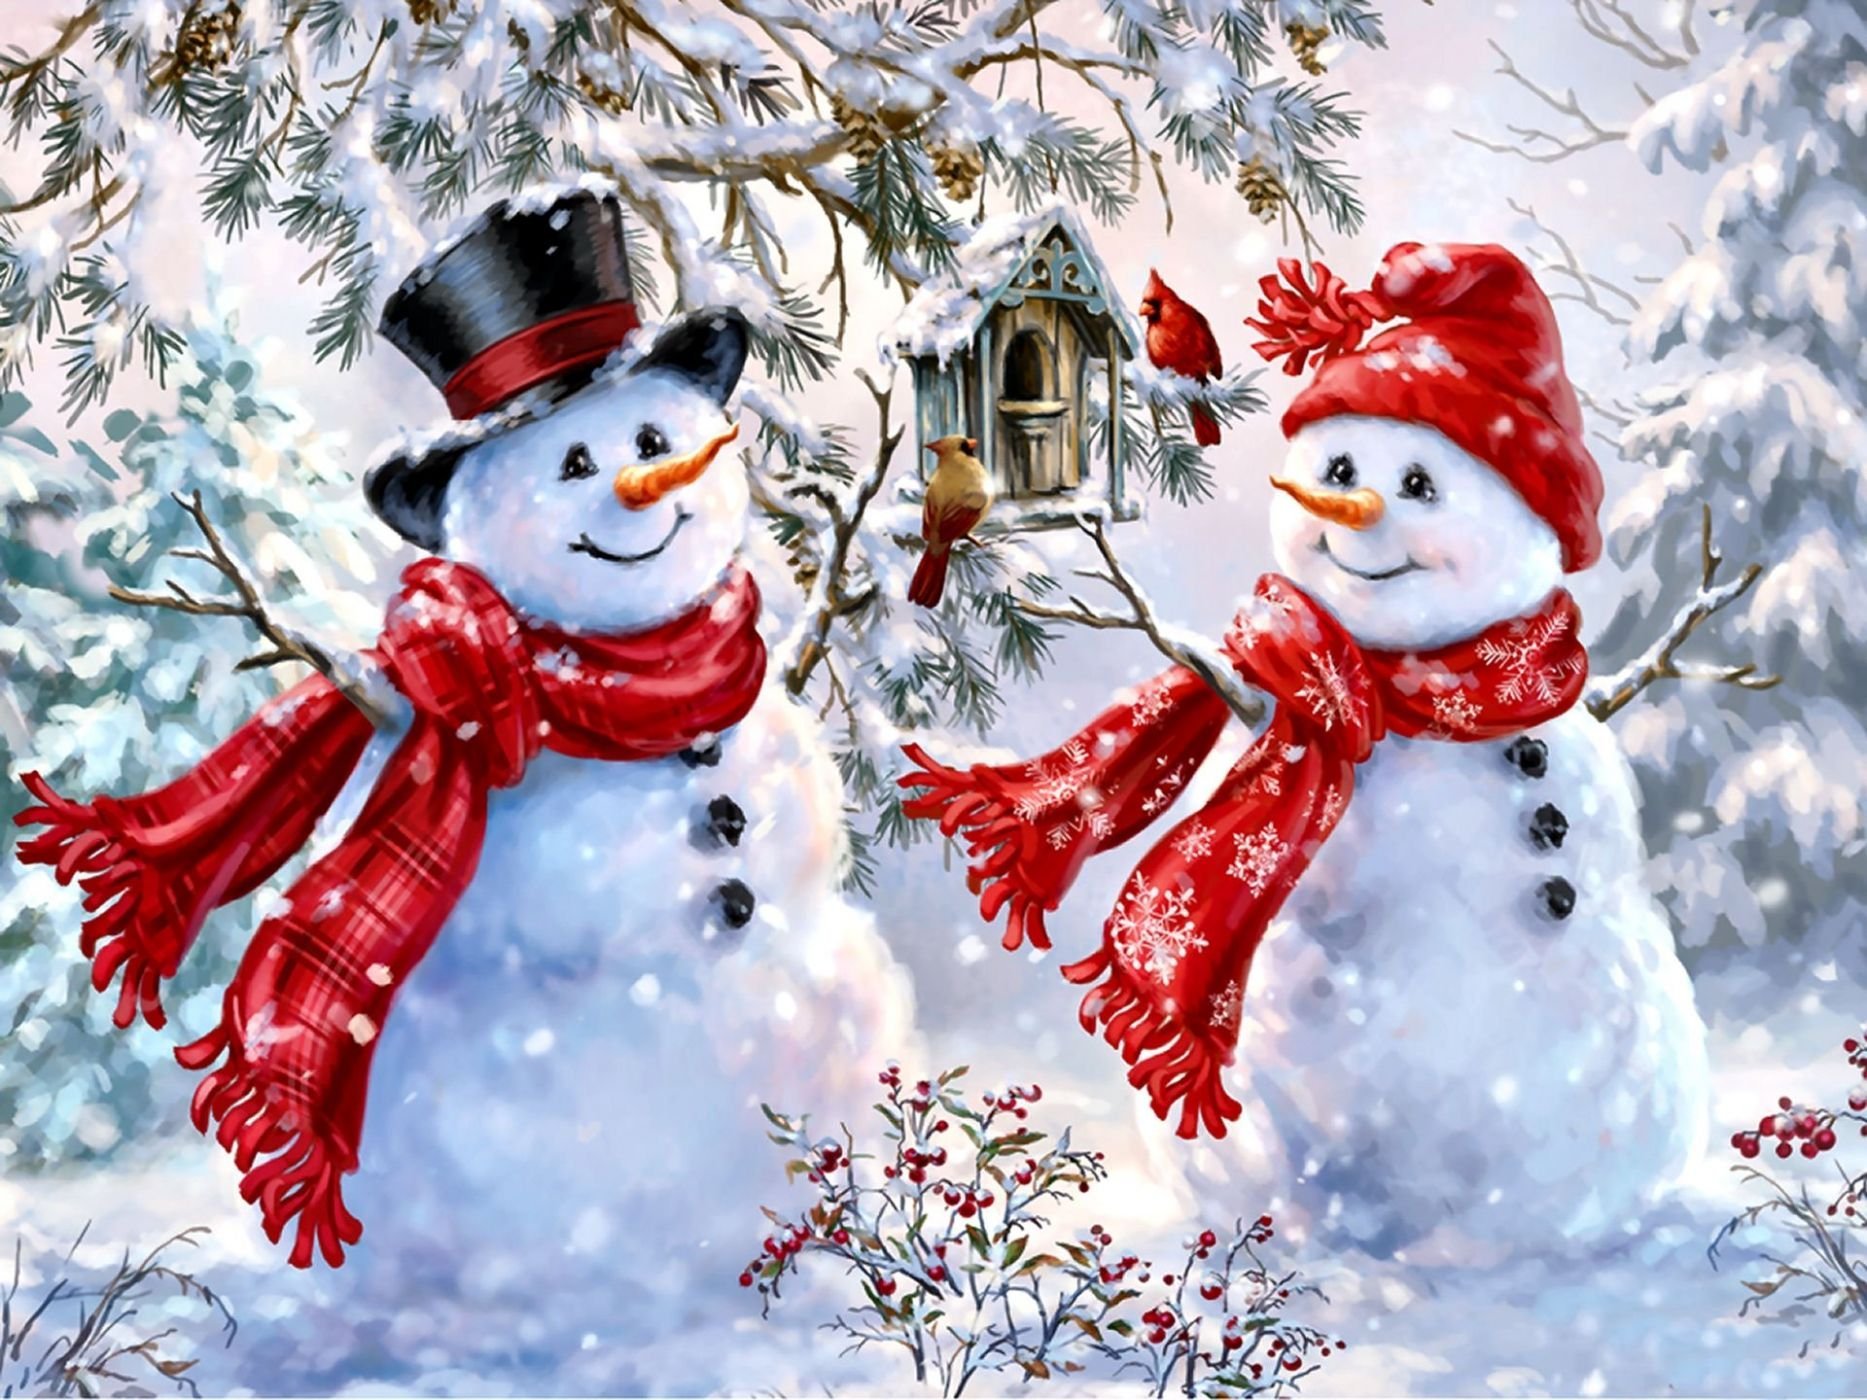 Песня счастья новый год. Дона Гельсингер. Художница Dona Gelsinger. Художница Дона Гельсингер (Dona Gelsinger) Снеговик. Новогодние картины.